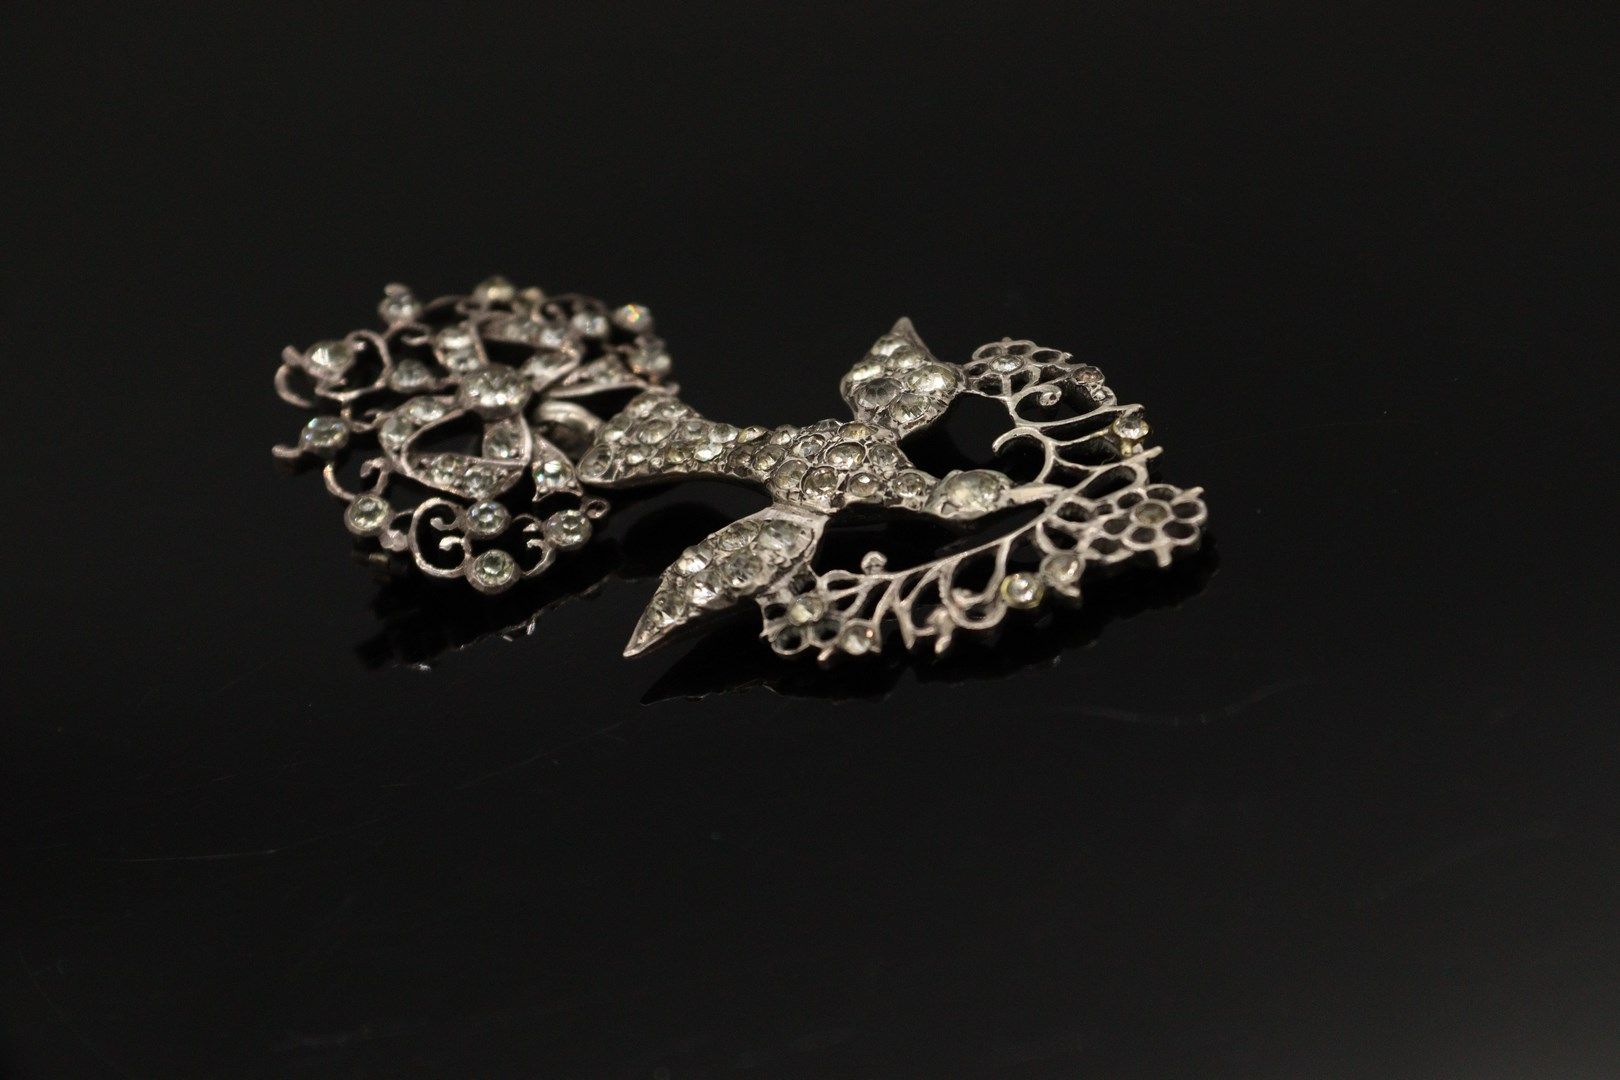 Null 一枚银质（800）"Norman Holy Spirit "胸针-吊坠，装饰有白色水钻。 它由一只鸽子组成，由一条打结的丝带牵着，嘴里叼着一根花枝。
&hellip;